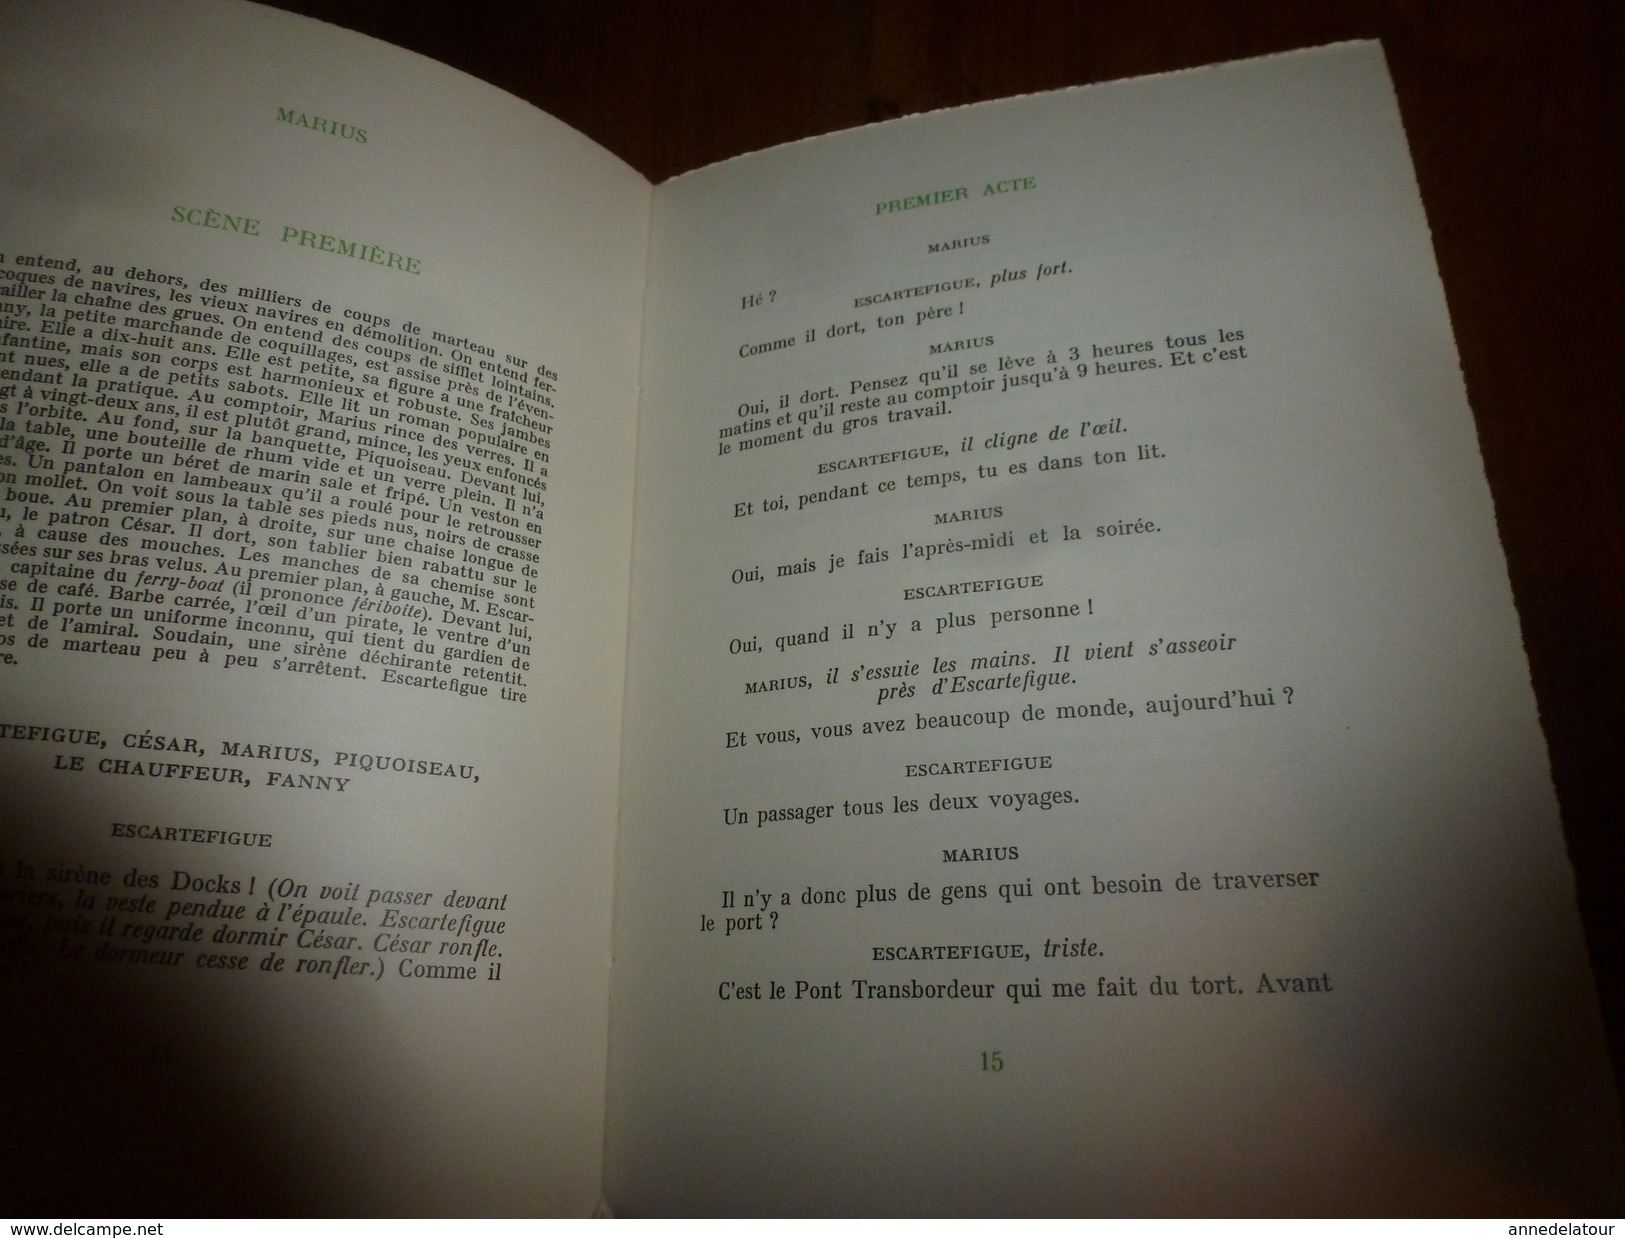 1952-53 :Lot de 4 livres de Marcel Pagnol ---->(couvertures toilées)César ,Marius ,Fanny ;(couverture bristol) Marius .